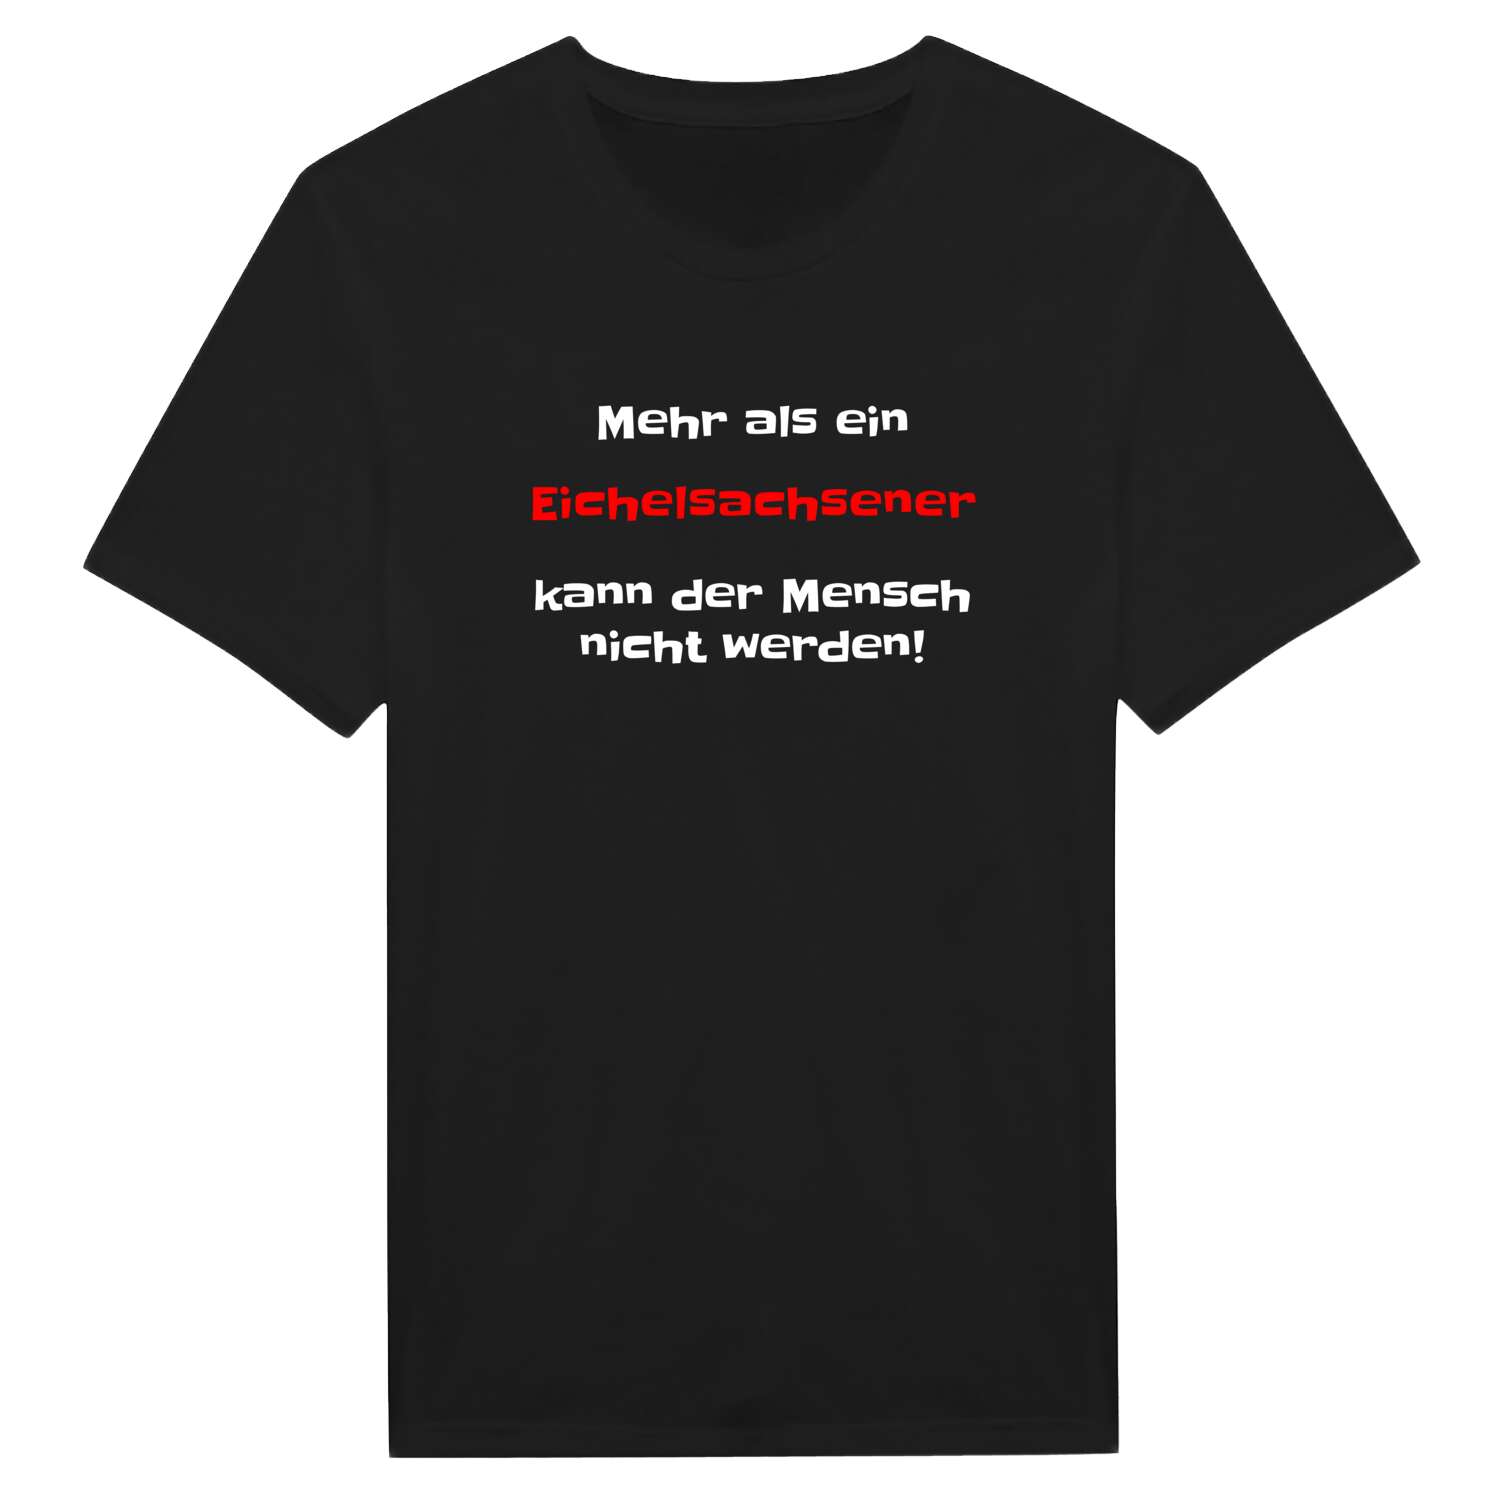 Eichelsachsen T-Shirt »Mehr als ein«